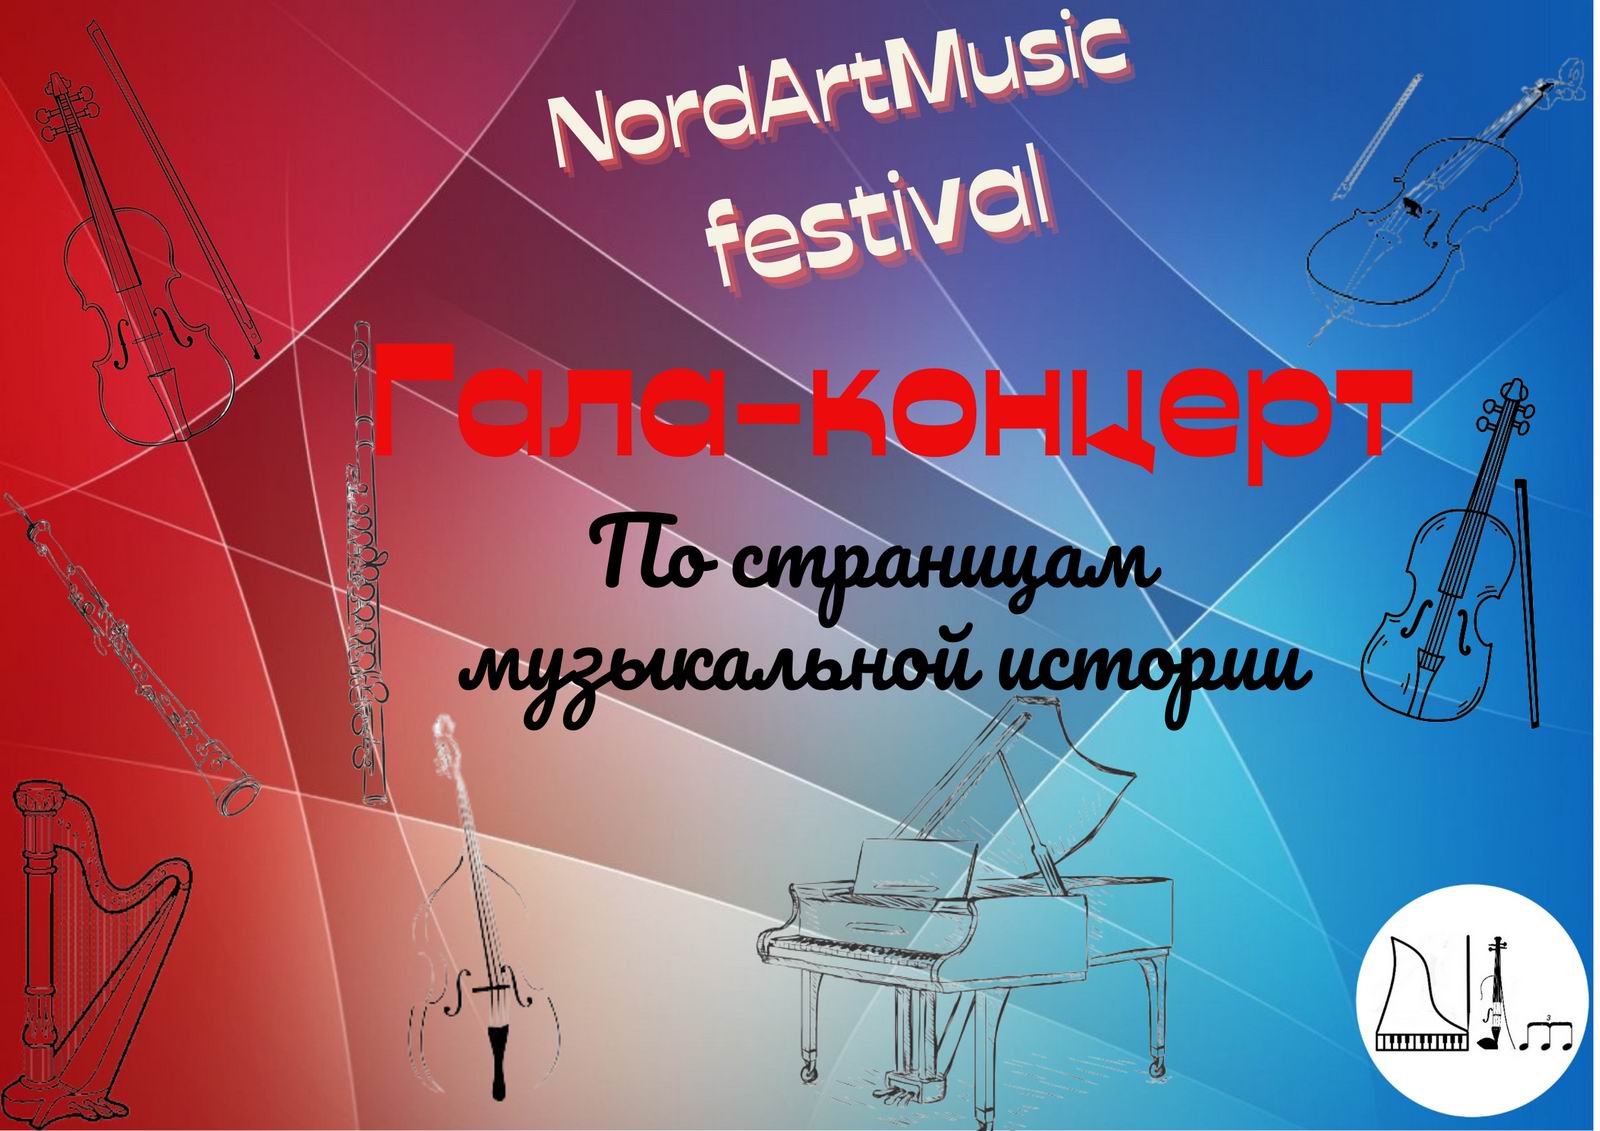 Иллюстрация: Гала-концерт NordArtMusic festival «По страницам музыкальной истории»